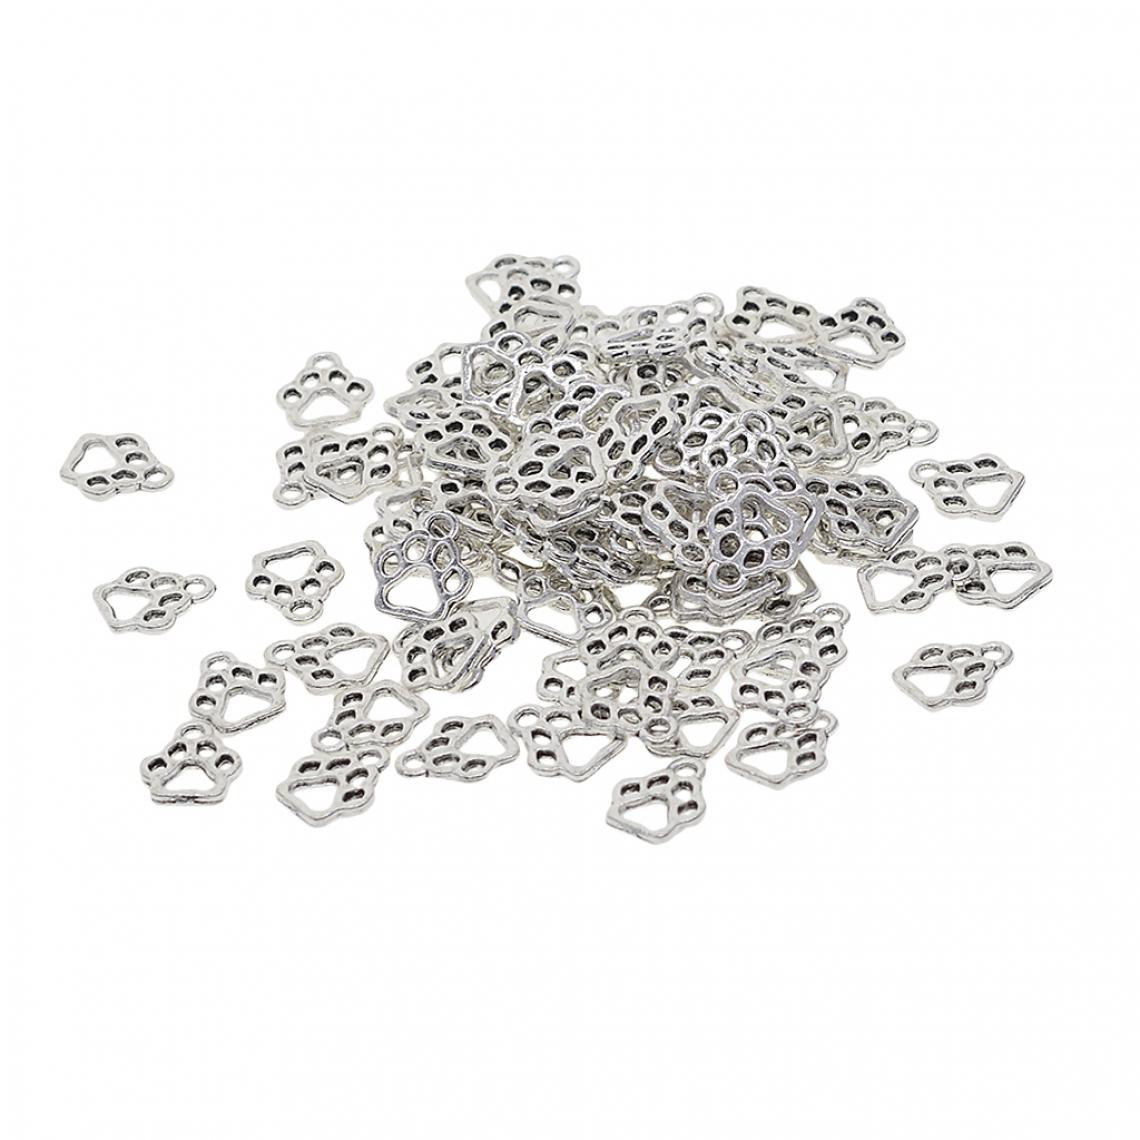 marque generique - 100pcs Perles Spacer Charmes Entretoise Pendentifs Forme Patte de Chat Creux Pour Fabrication de Bijoux Diy - Perles